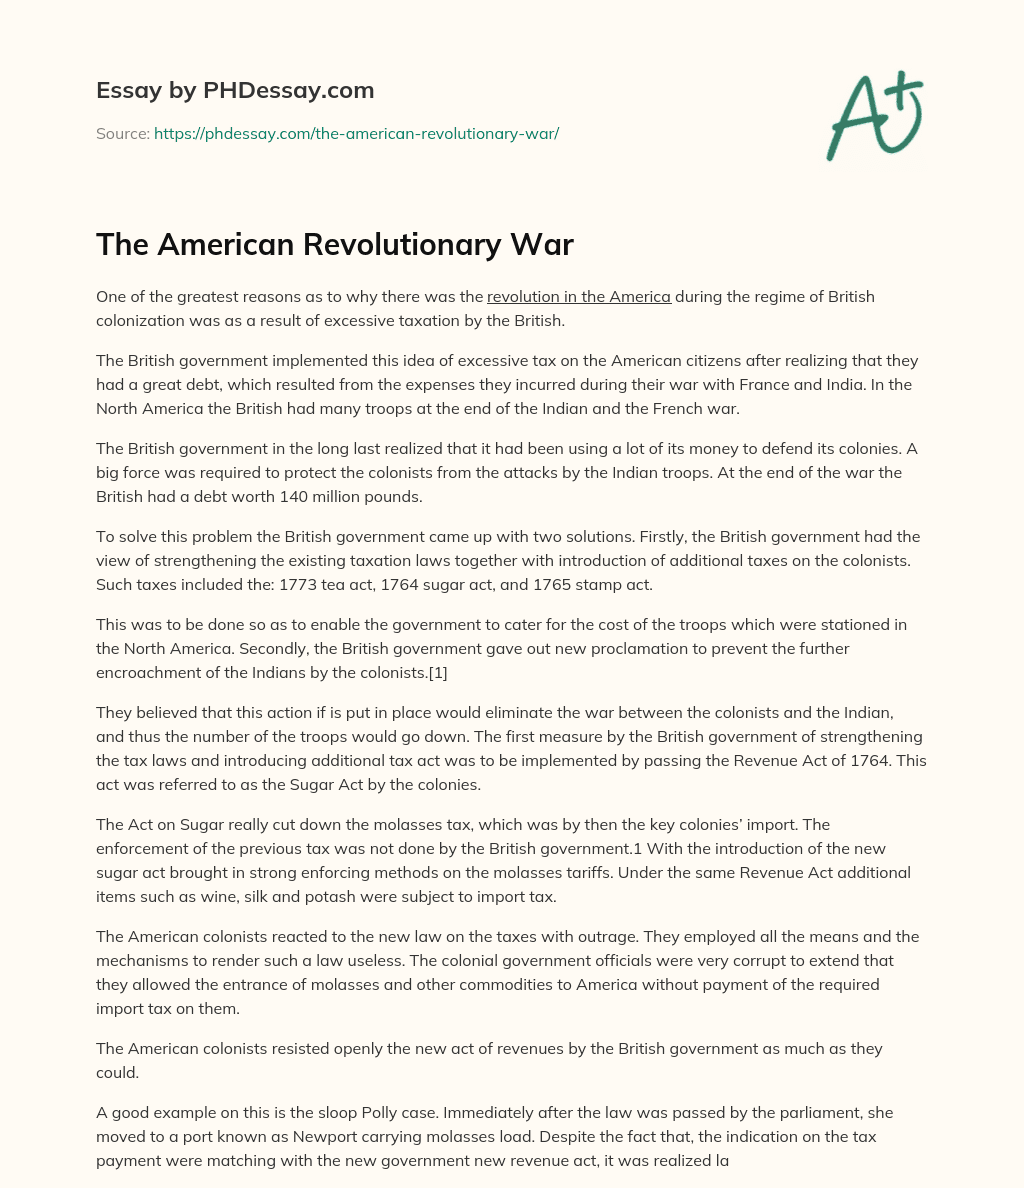 The American Revolutionary War essay